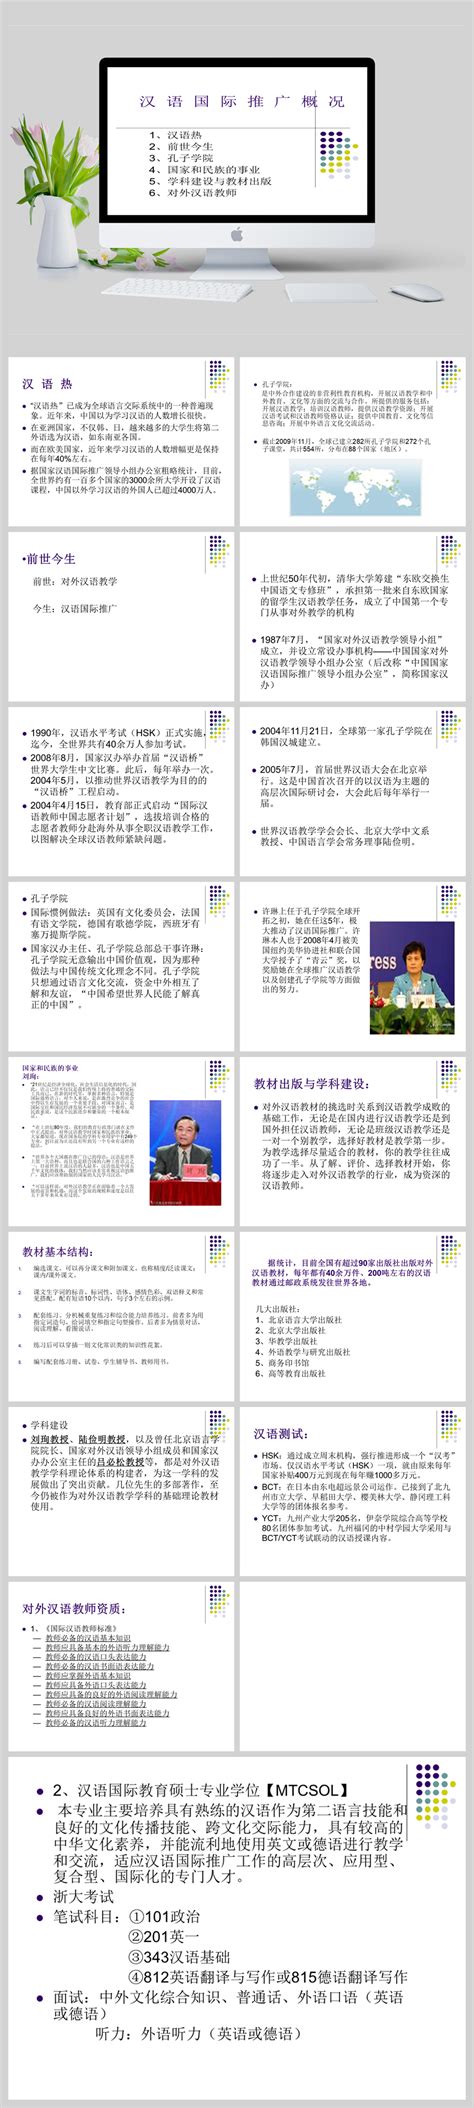 汉语推广教研室召开关于开设《走进温州》实践课程建设讨论会-国际教育学院